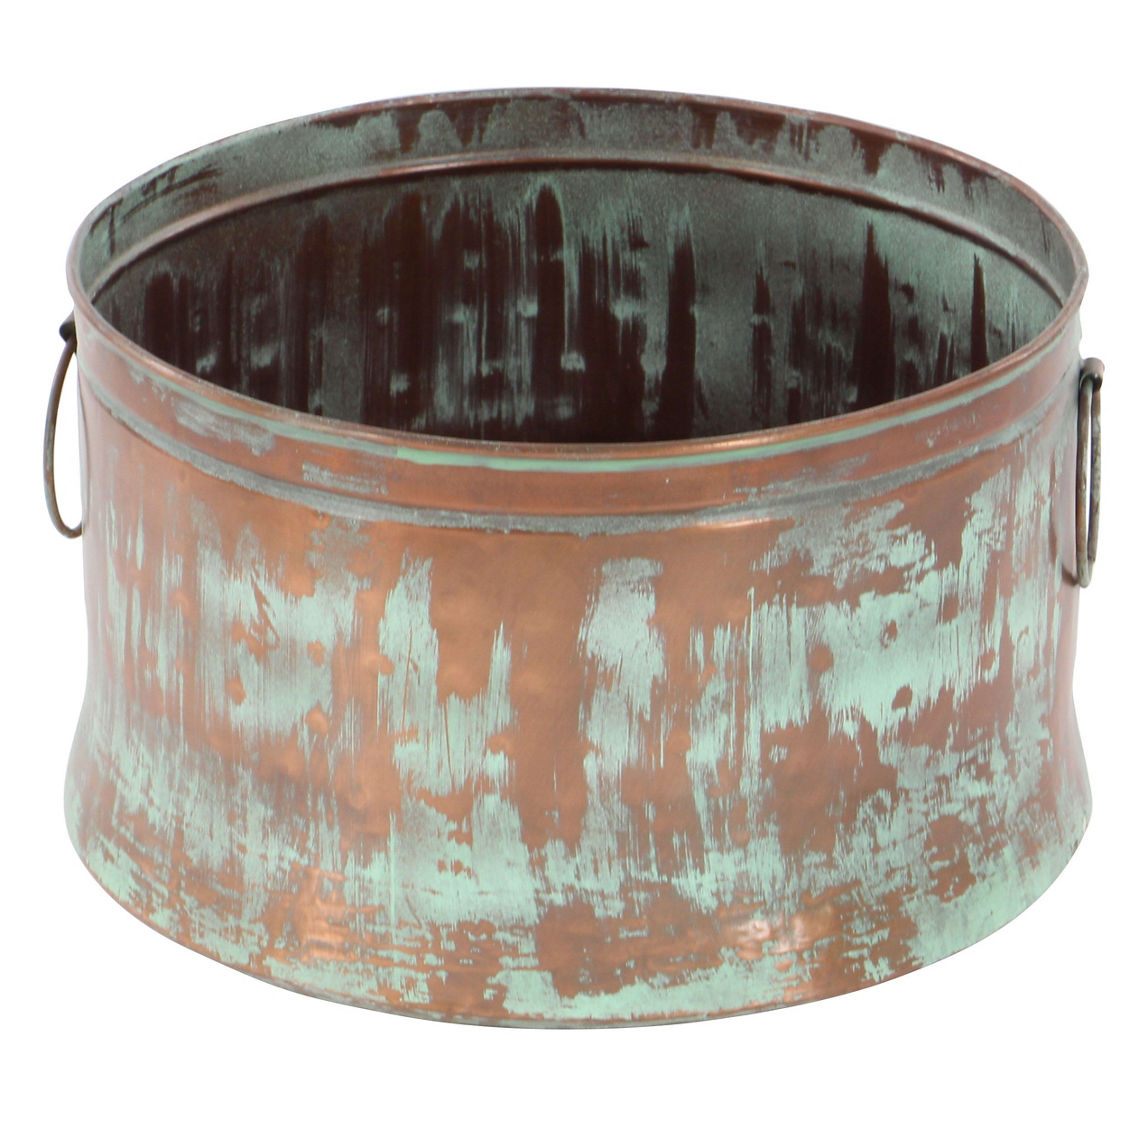 Morgan Hill Home Rustic Copper Metal Planter Set - Image 5 of 5